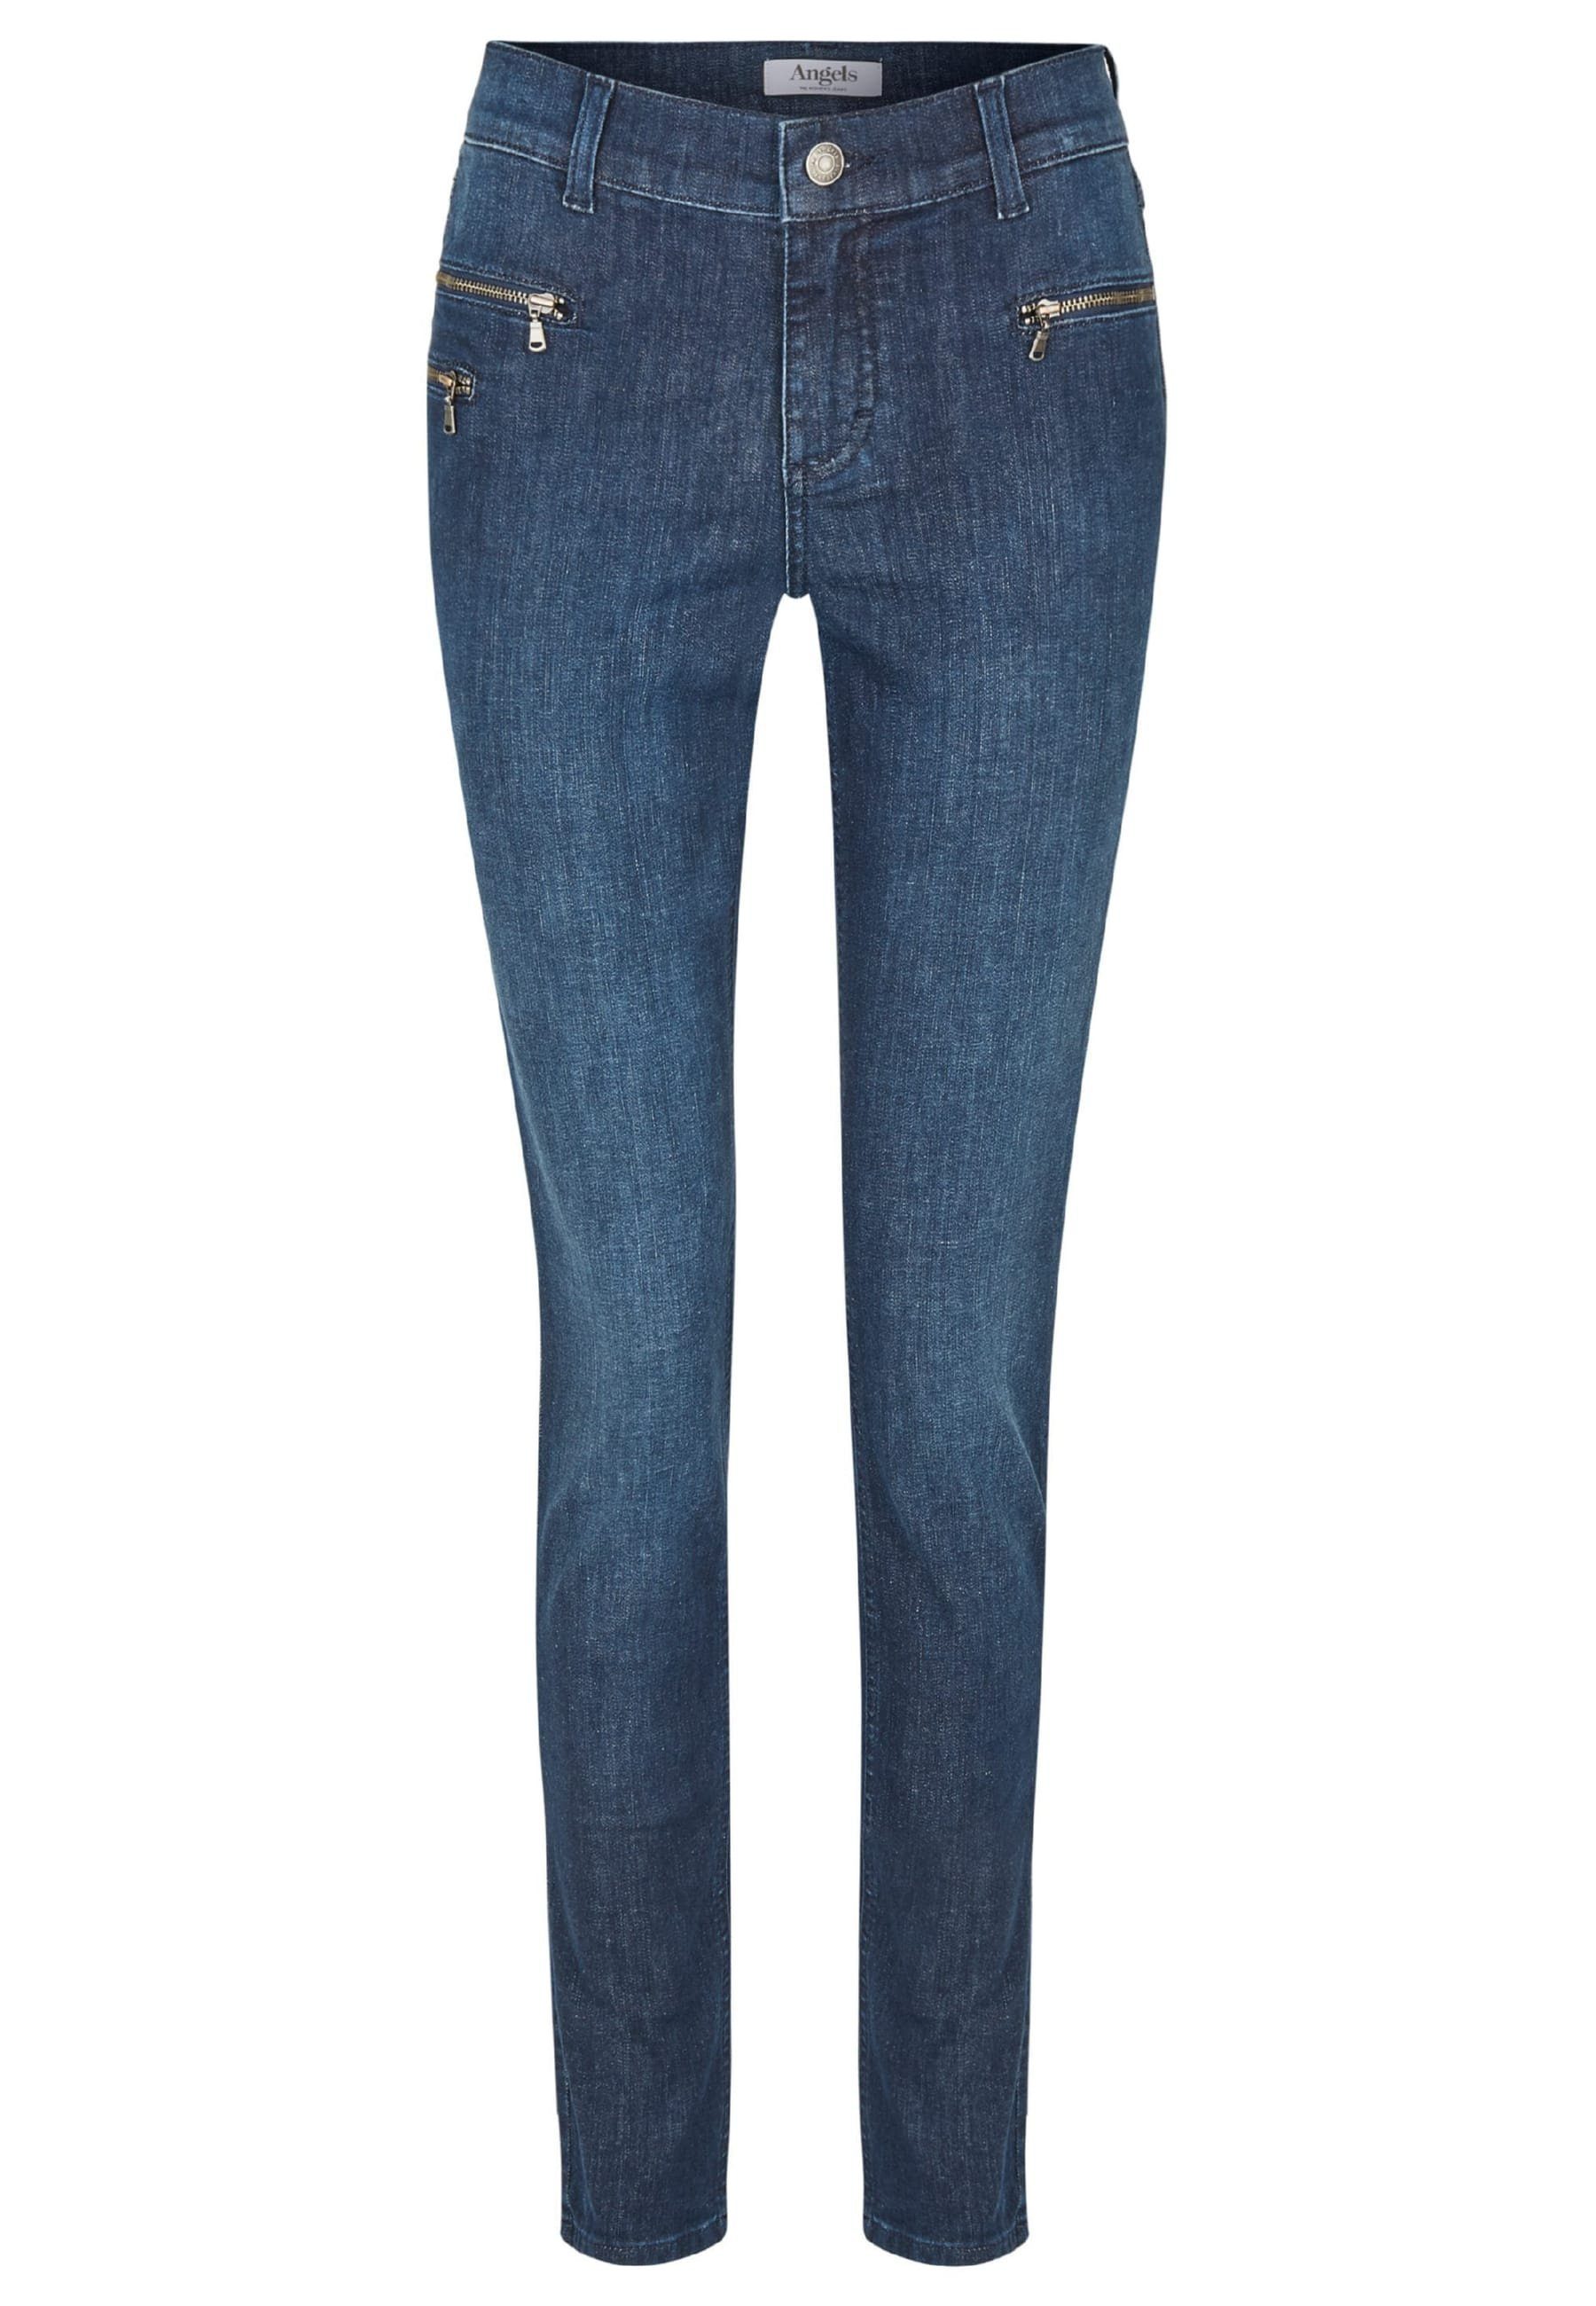 Jeans Malu Slim-fit-Jeans Zip Label-Applikationen mit mit ANGELS Zierreißverschlüssen indigo